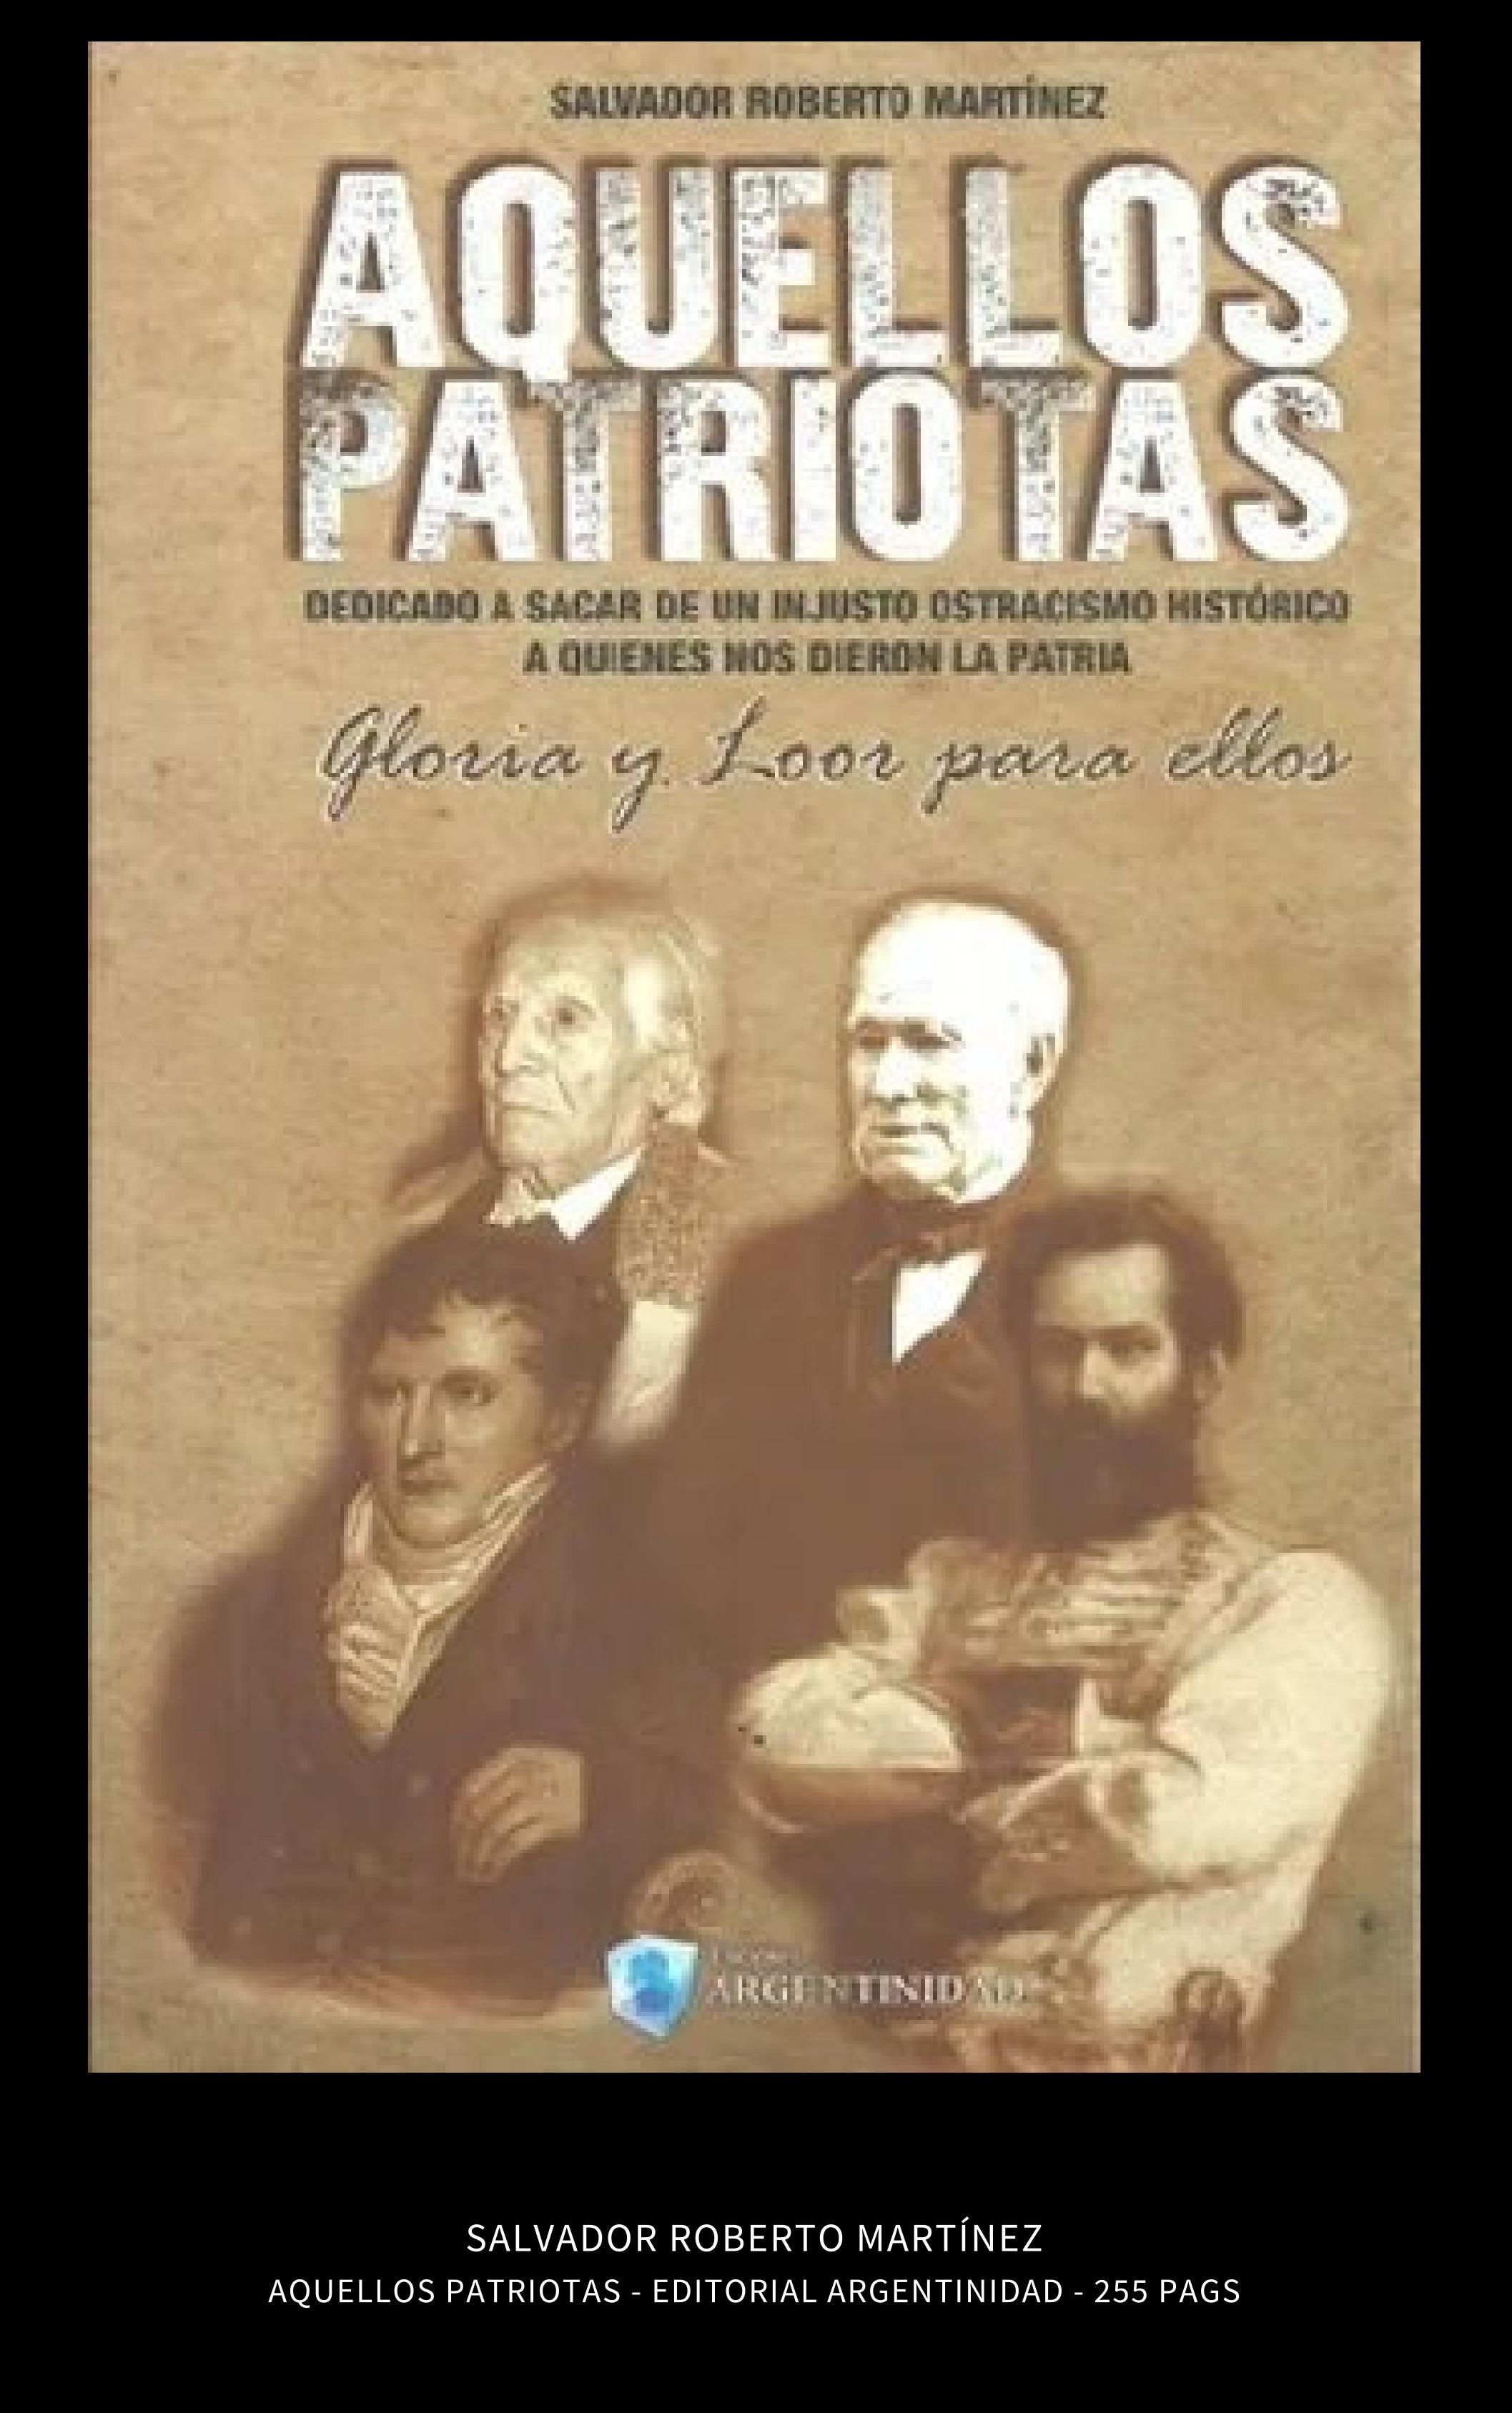 Salvador Roberto Martínez - AQUELLOS PATRIOTAS - Ediciones Argentinidad - 2017